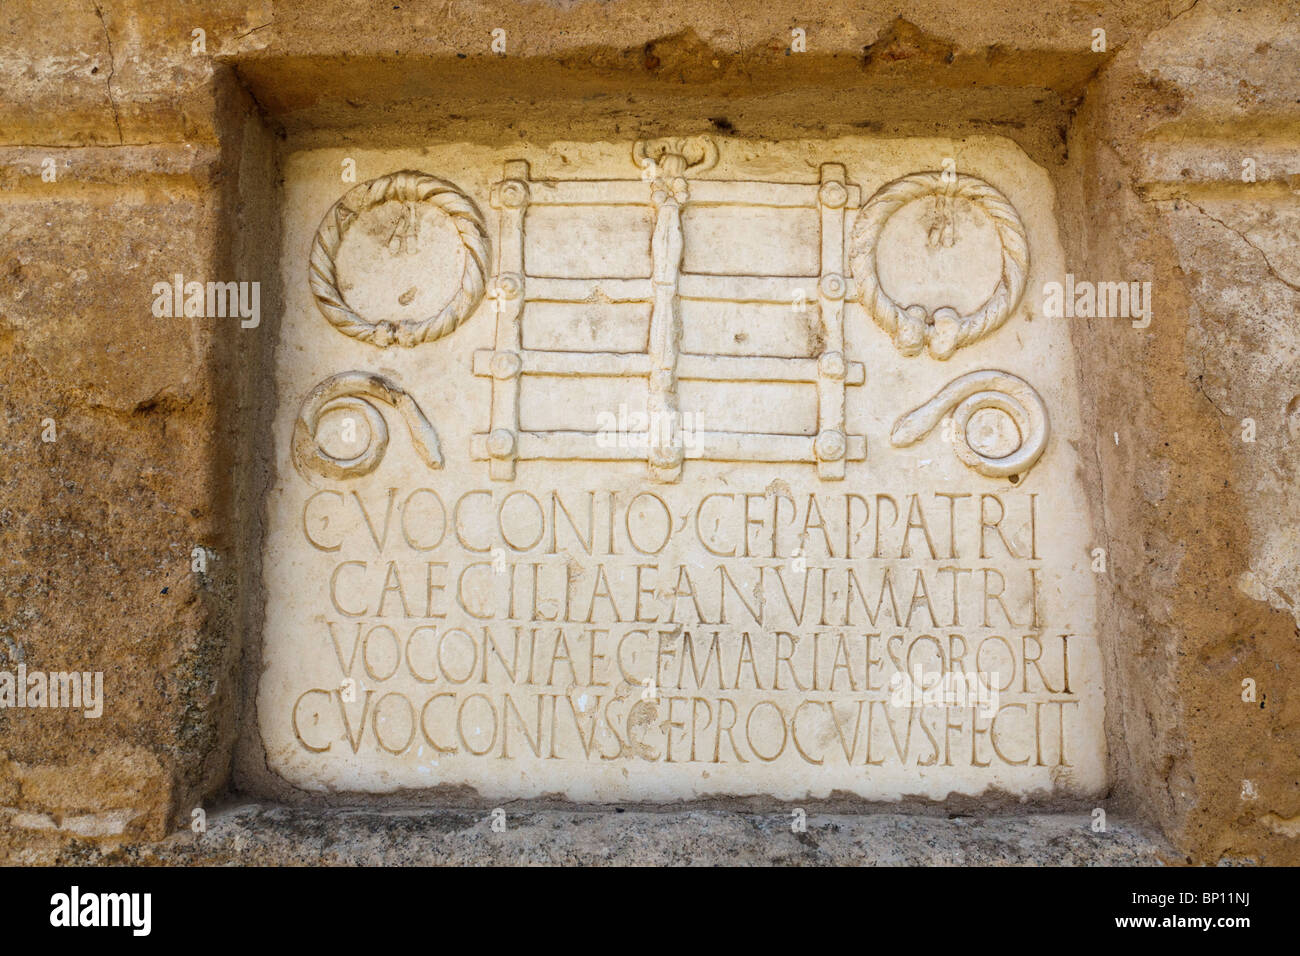 Mérida, provincia de Badajoz, España. Dedicación de mármol losa en el primer siglo AD mausoleo de la familia Voconio romano. Foto de stock